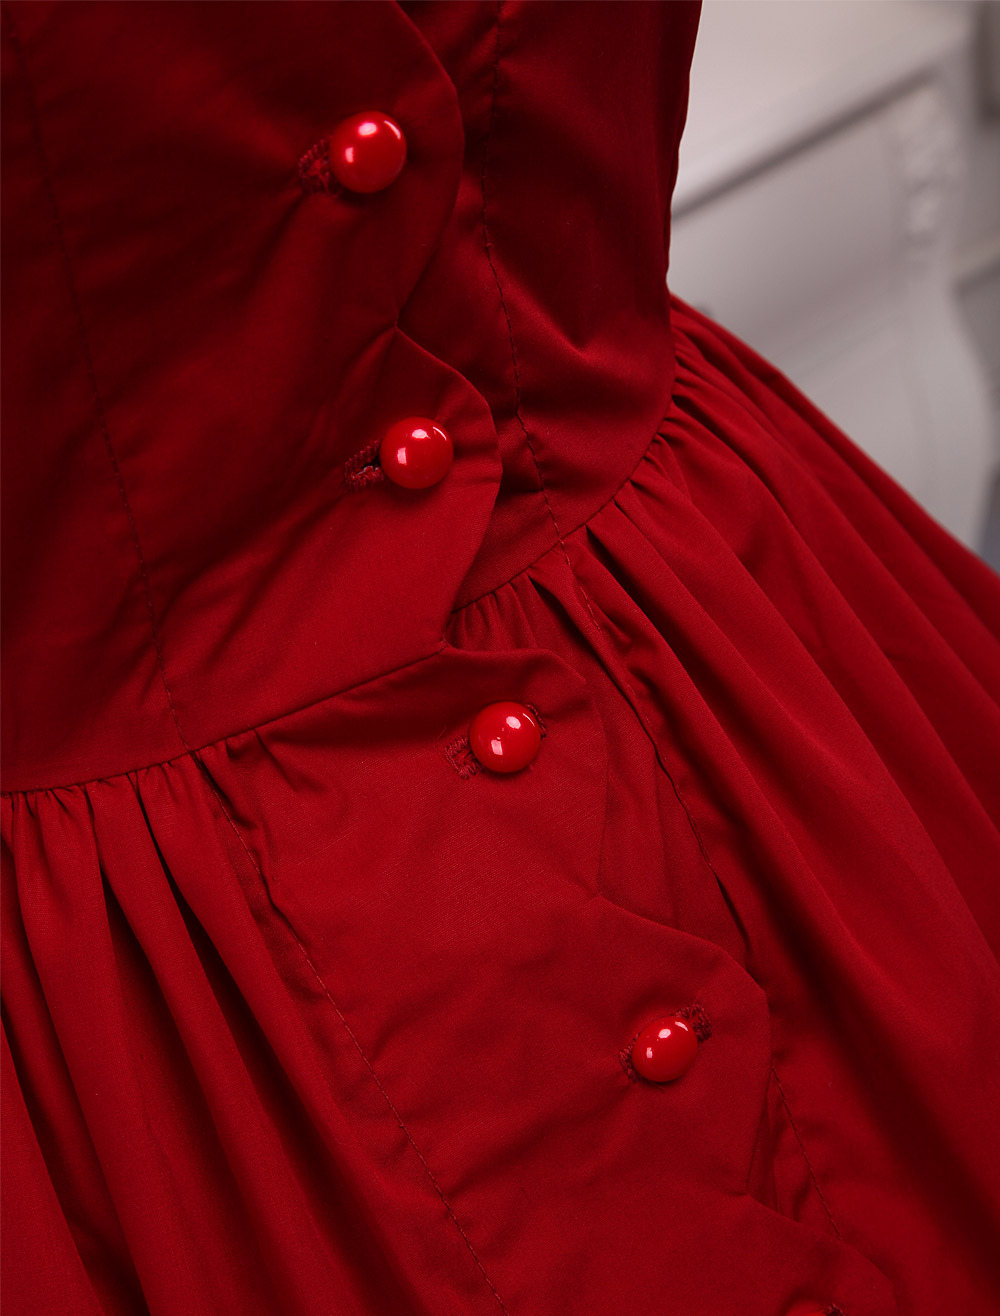 Cotton Red Bow Classic Lolita Dress - Milanoo.com